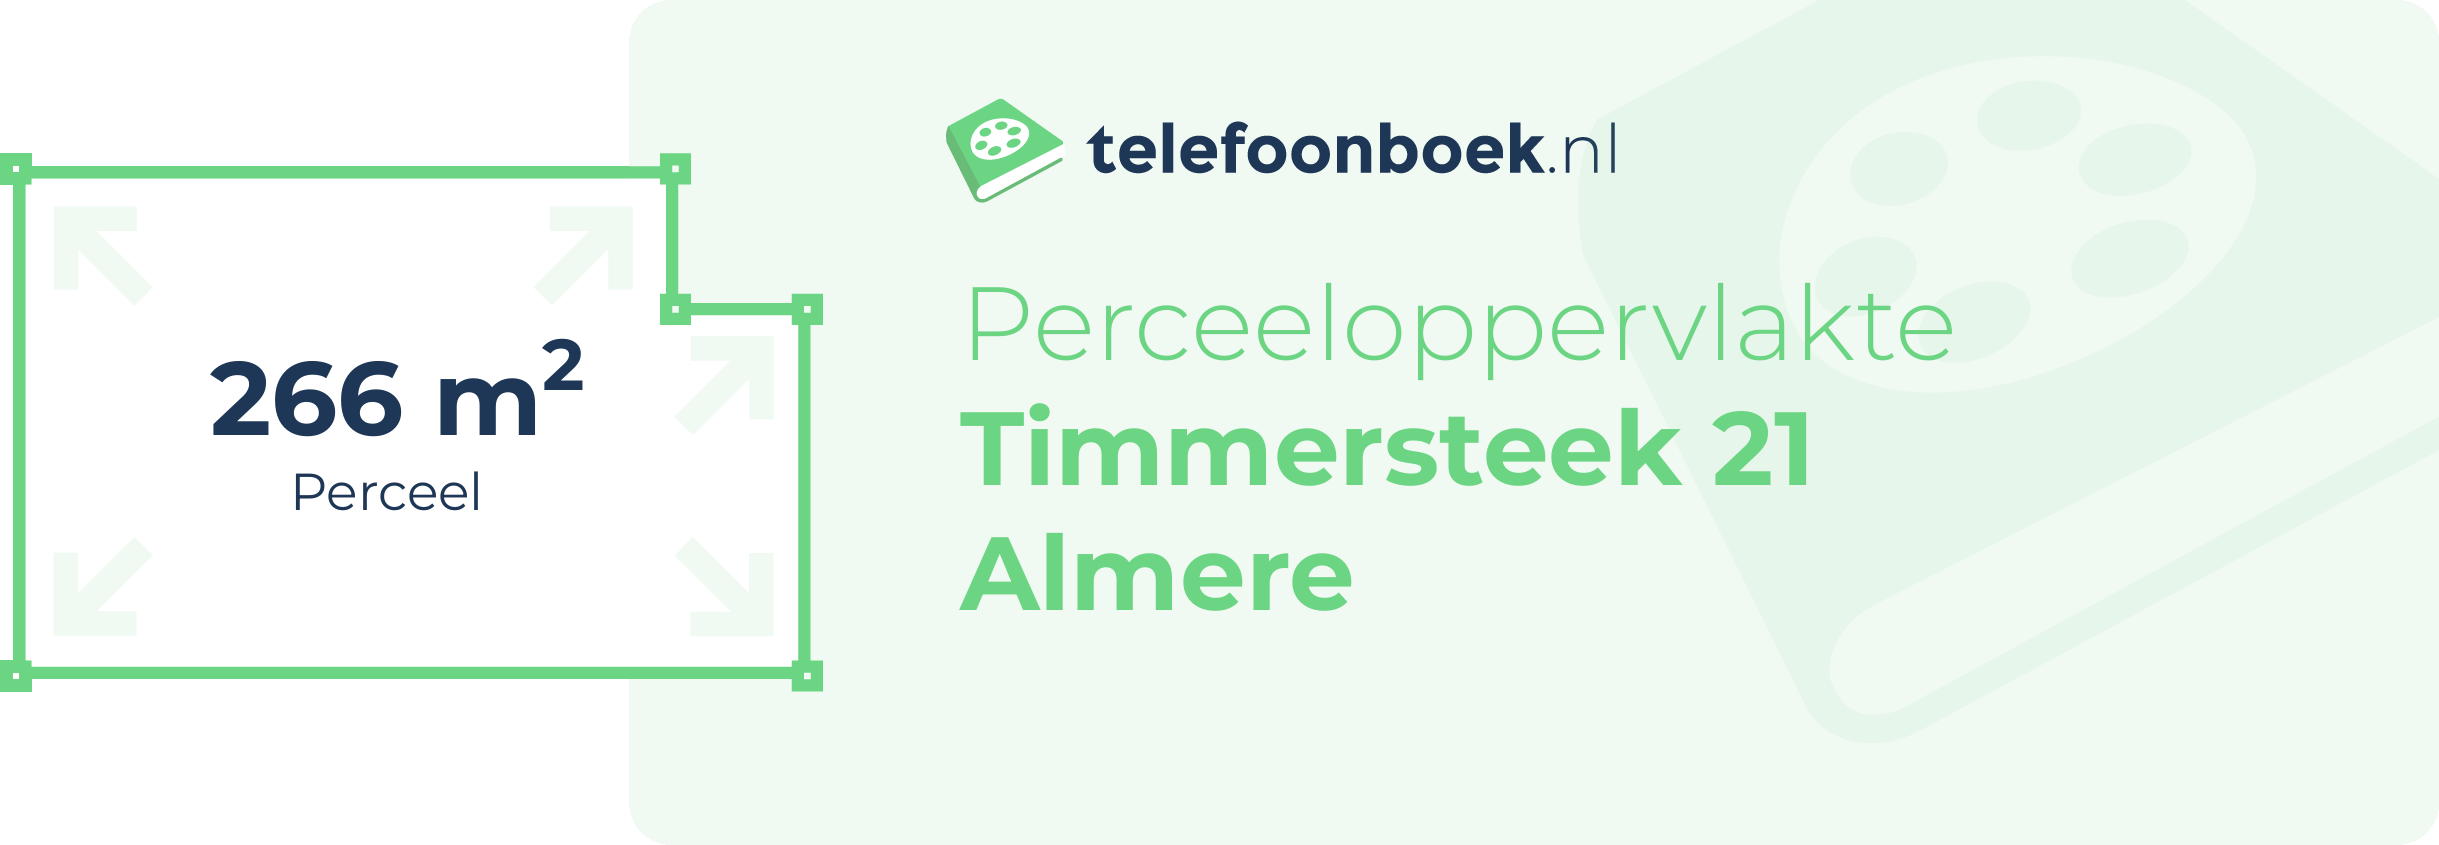 Perceeloppervlakte Timmersteek 21 Almere